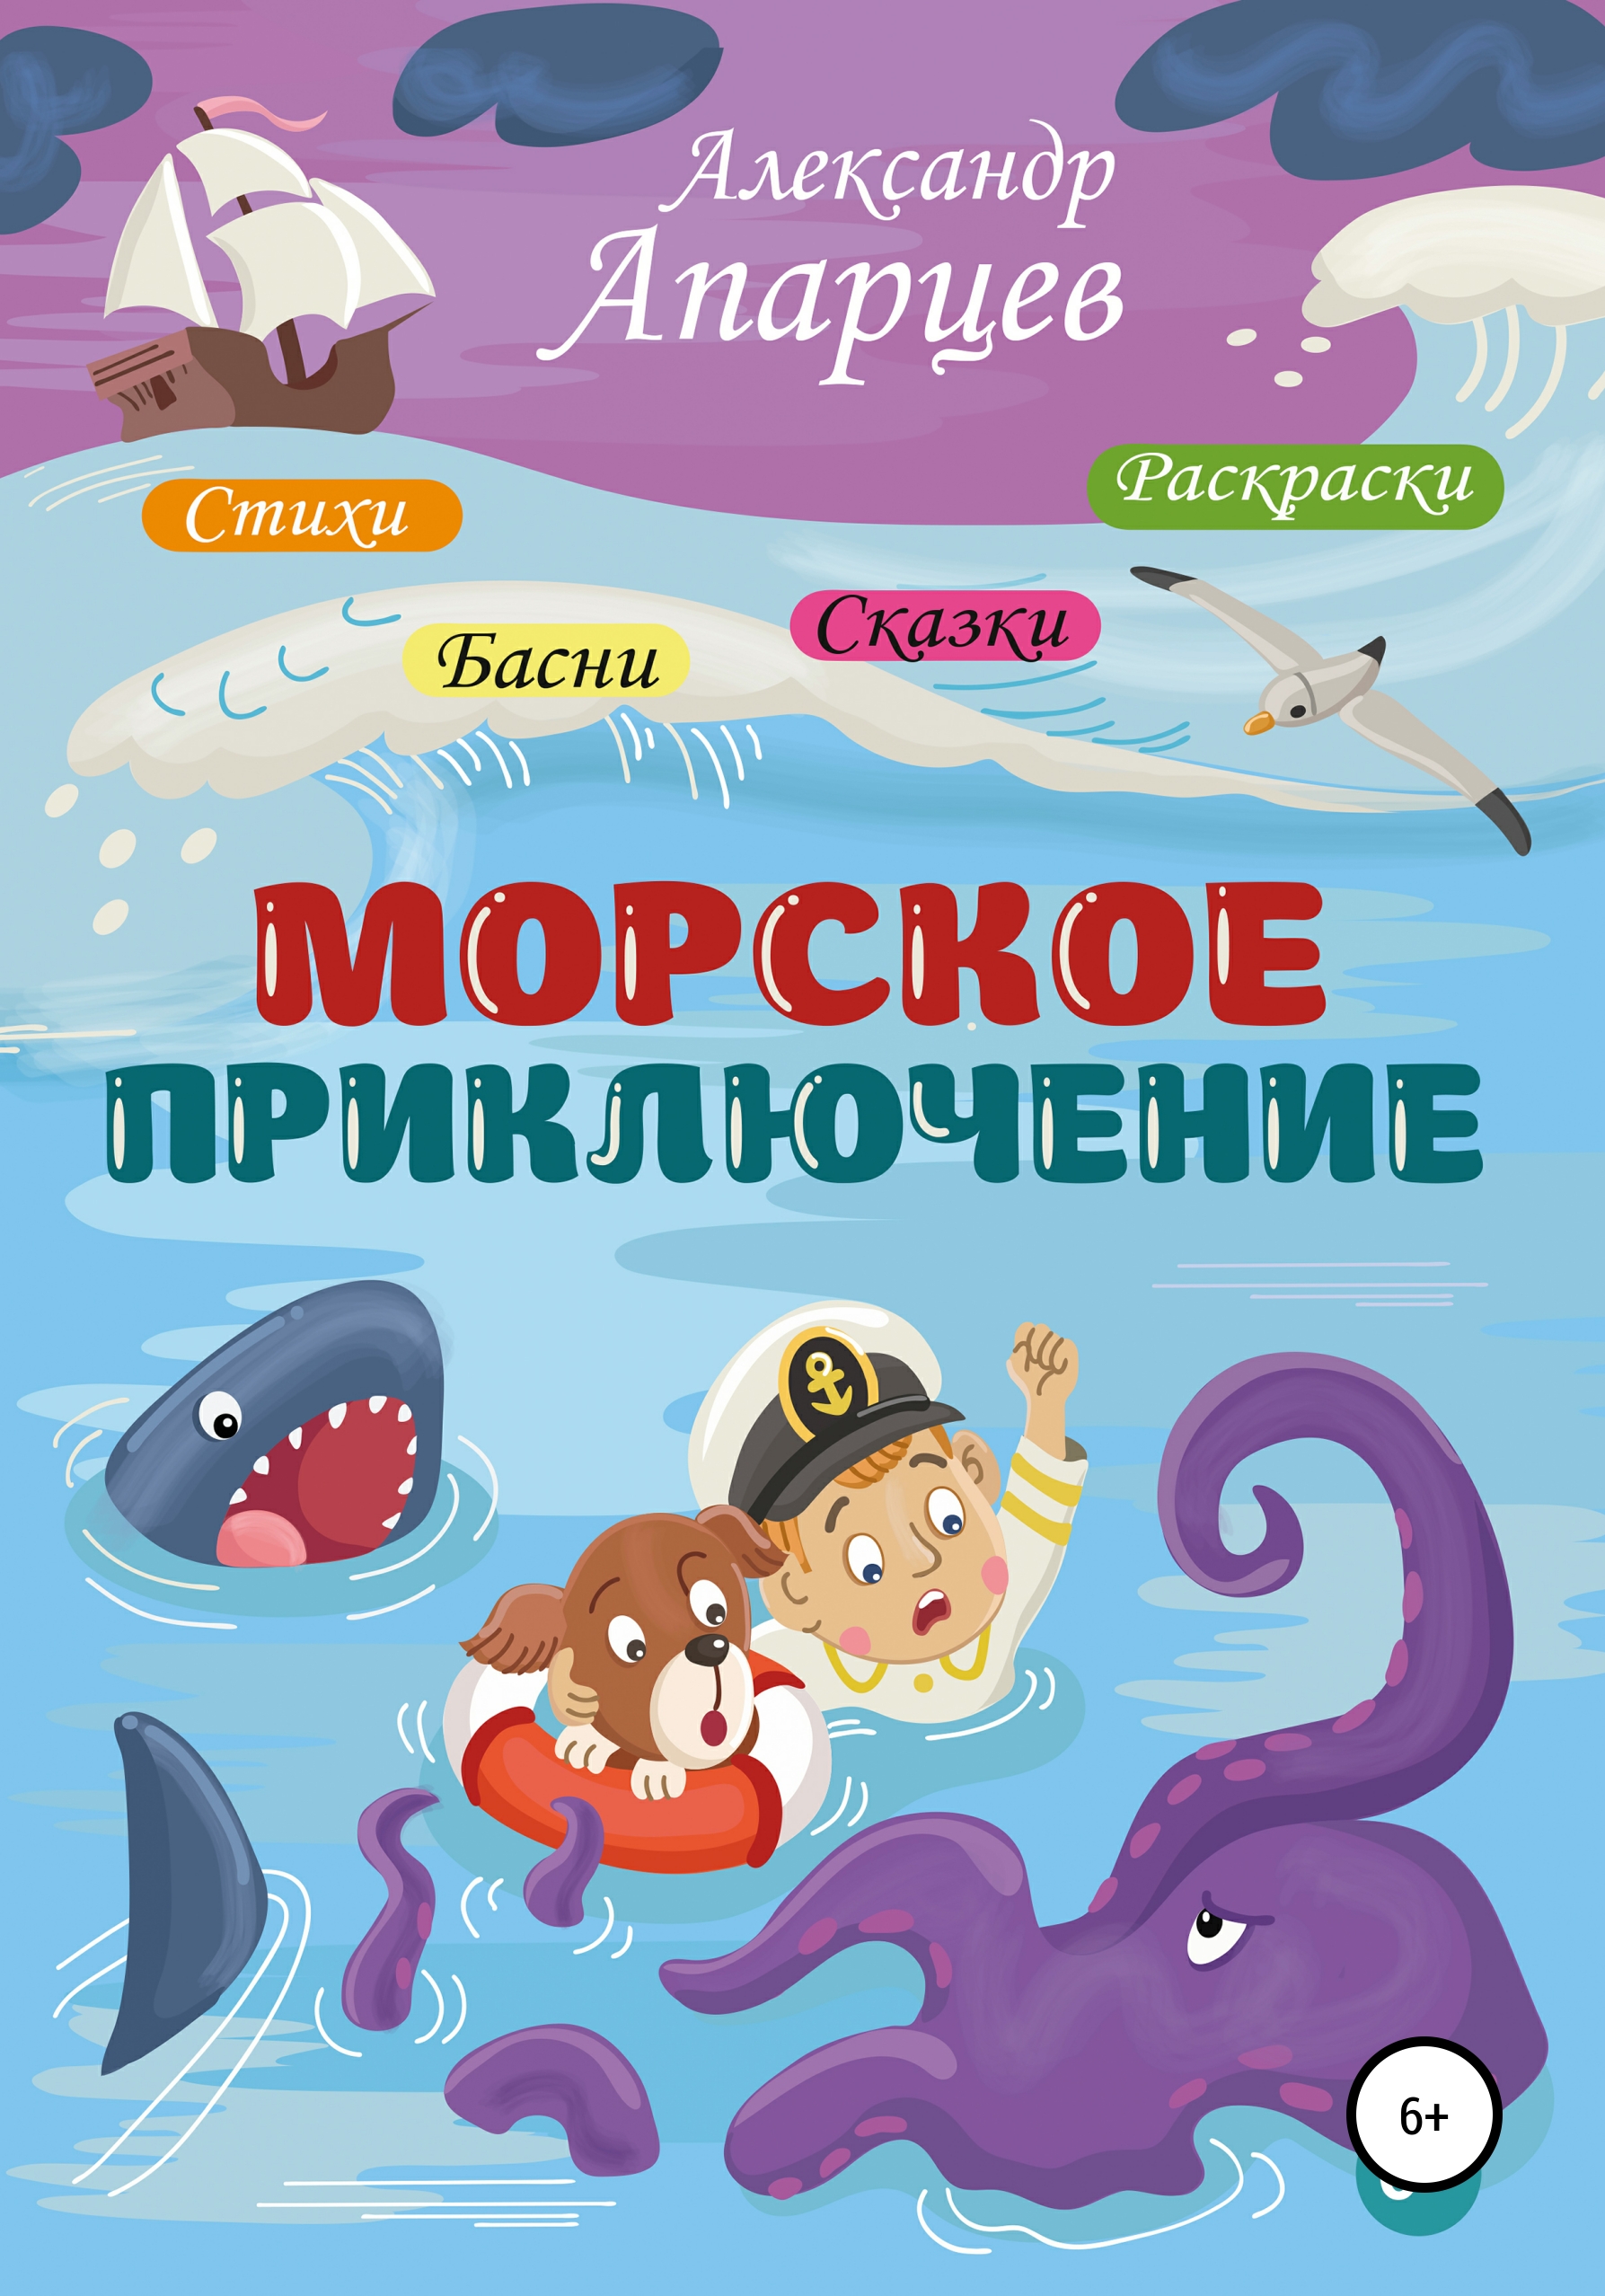 Книги про морские приключения для детей. Морское приключение. Морская литература для детей. 1 морское приключение